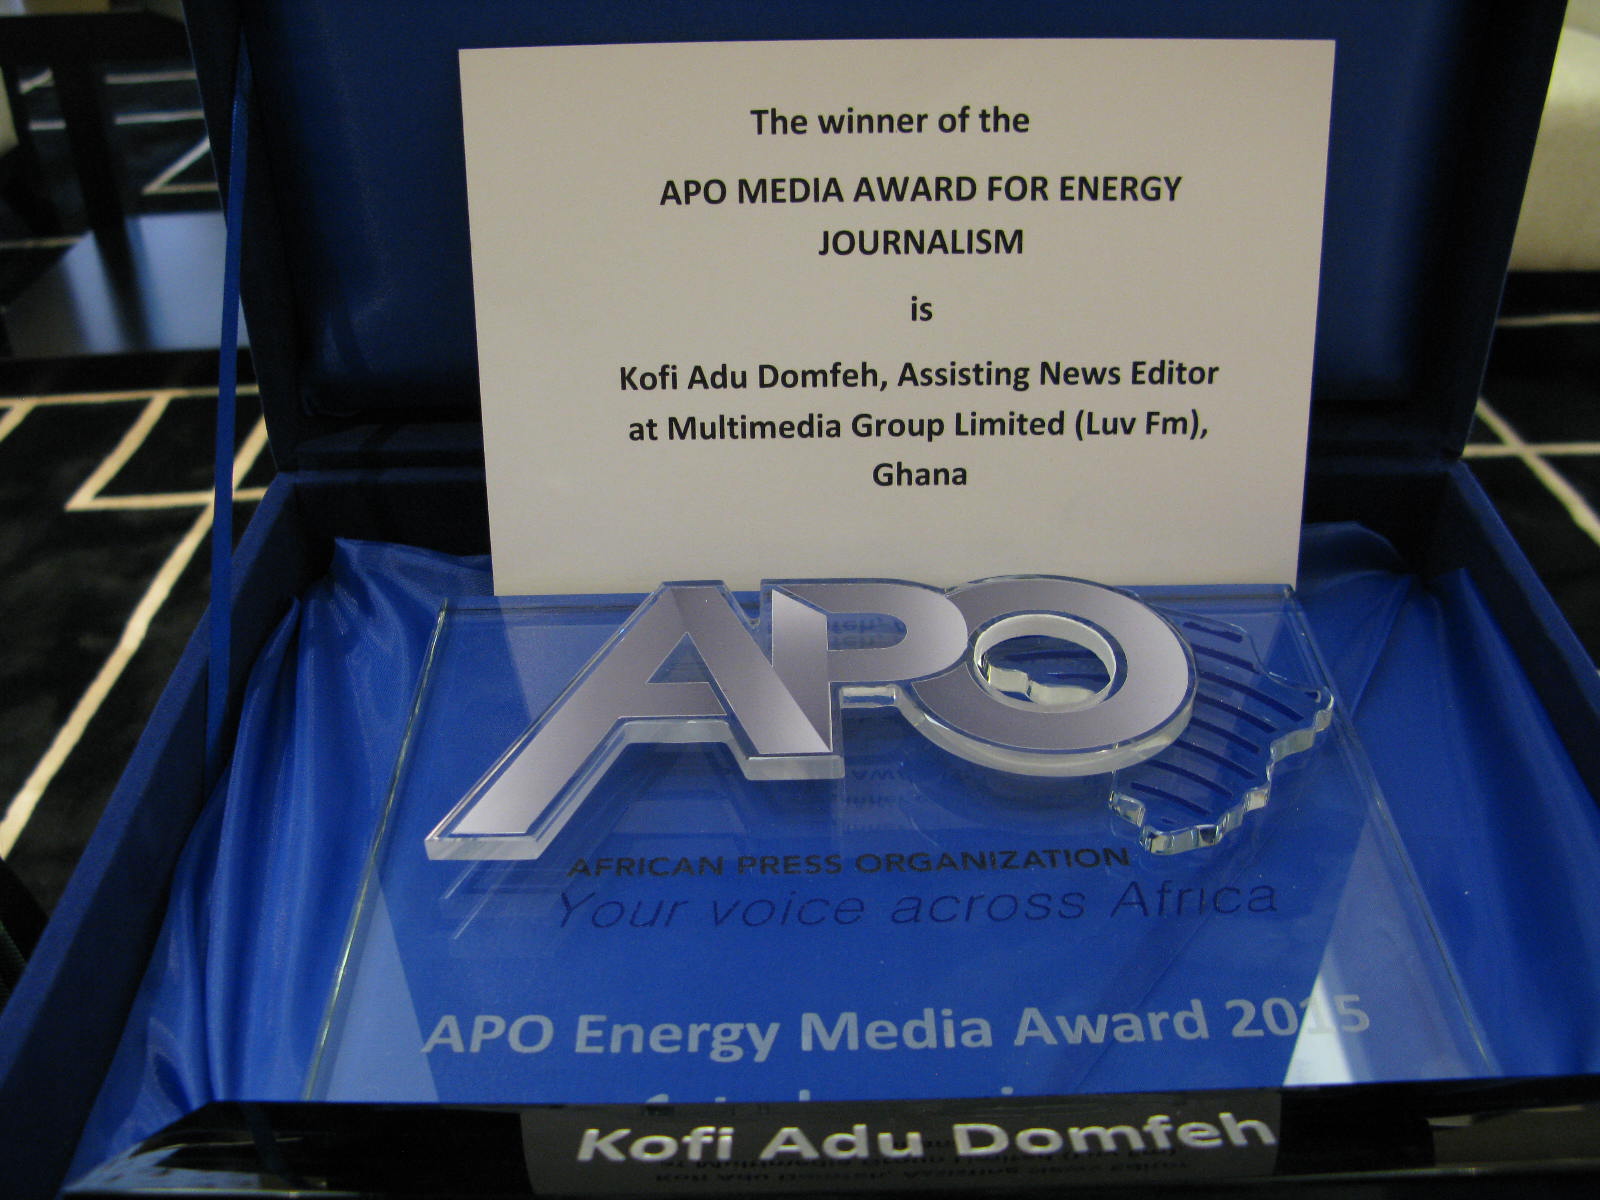 APO Energy Media Award 2015